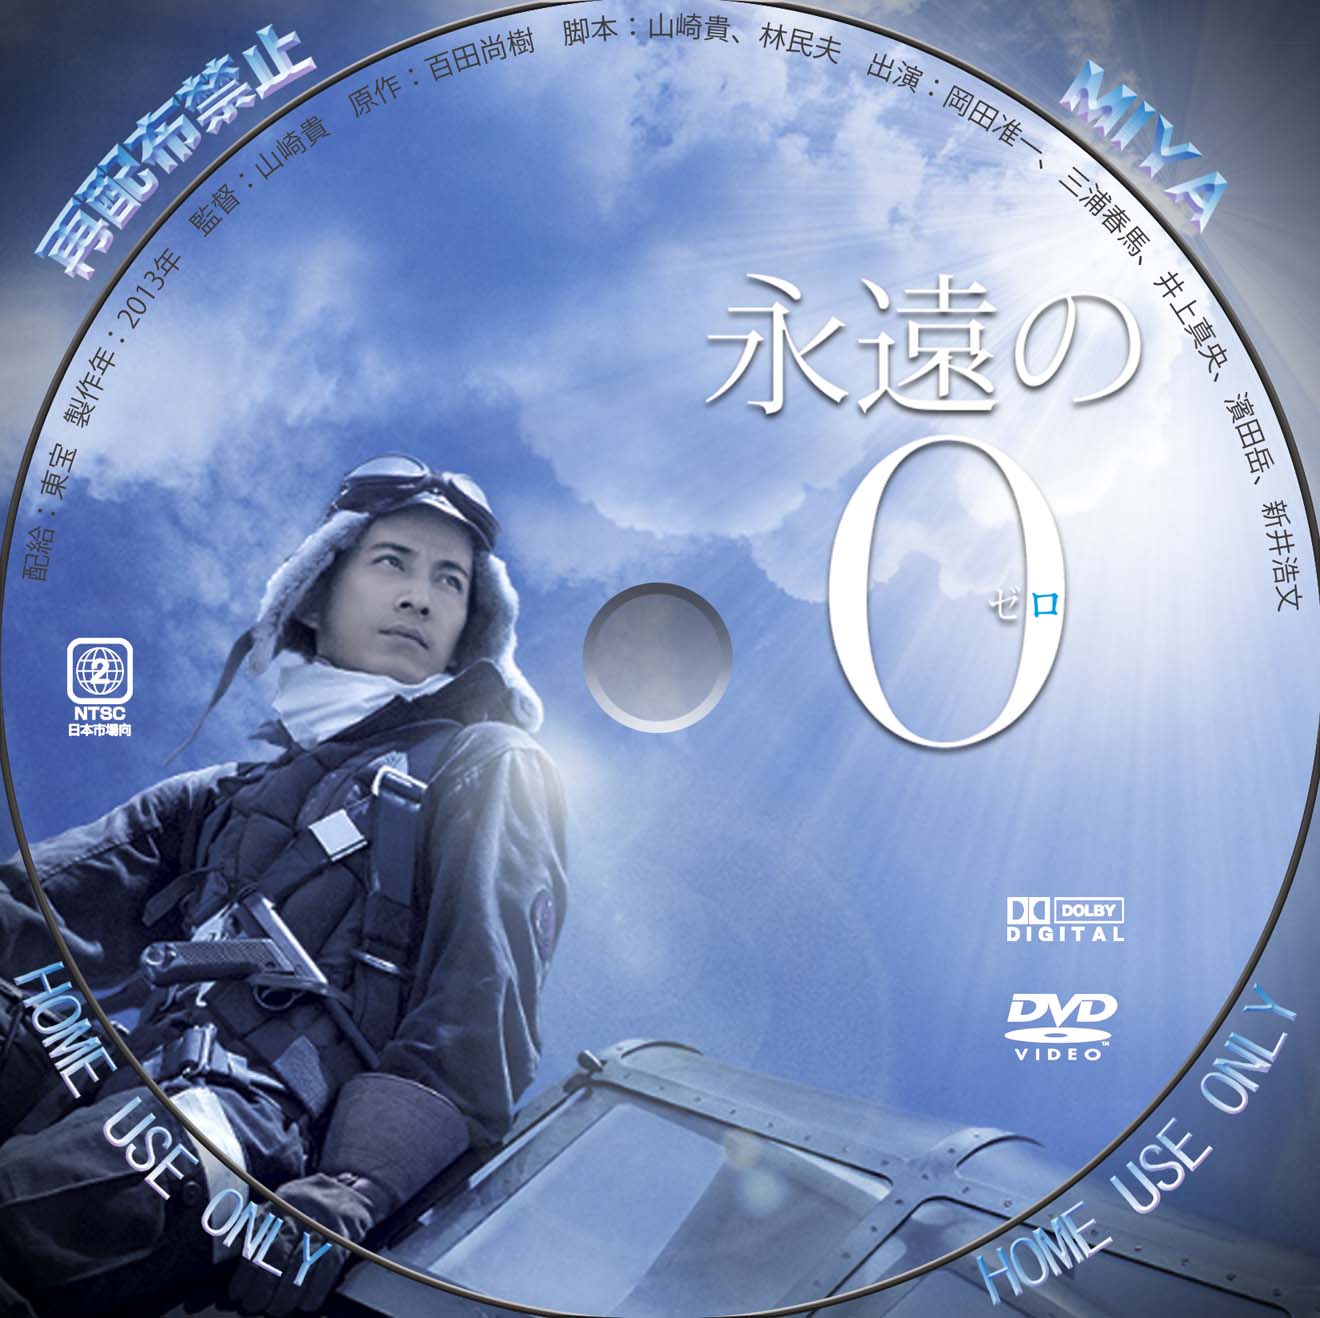 永遠の0 DVD 豪華版 初回限定盤 美品！ V6 岡田准一 三浦春馬 井上真央 - 日本映画